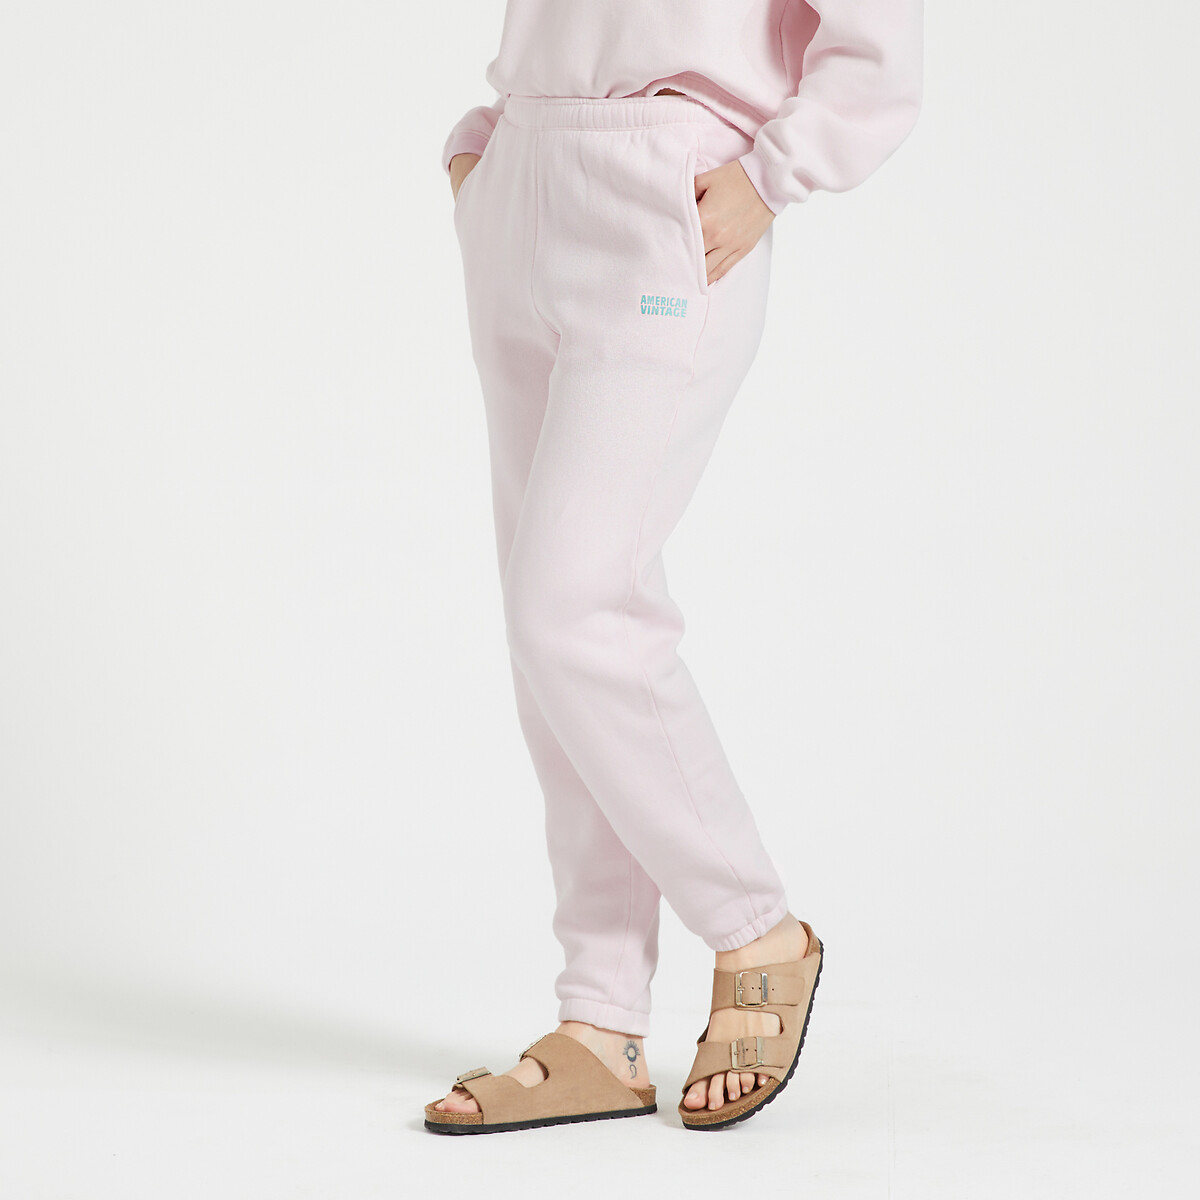 Брюки-джоггеры IZUBIRD L розовый брюки джоггеры из мольтона вставки с воланами 2 года 86 см синий